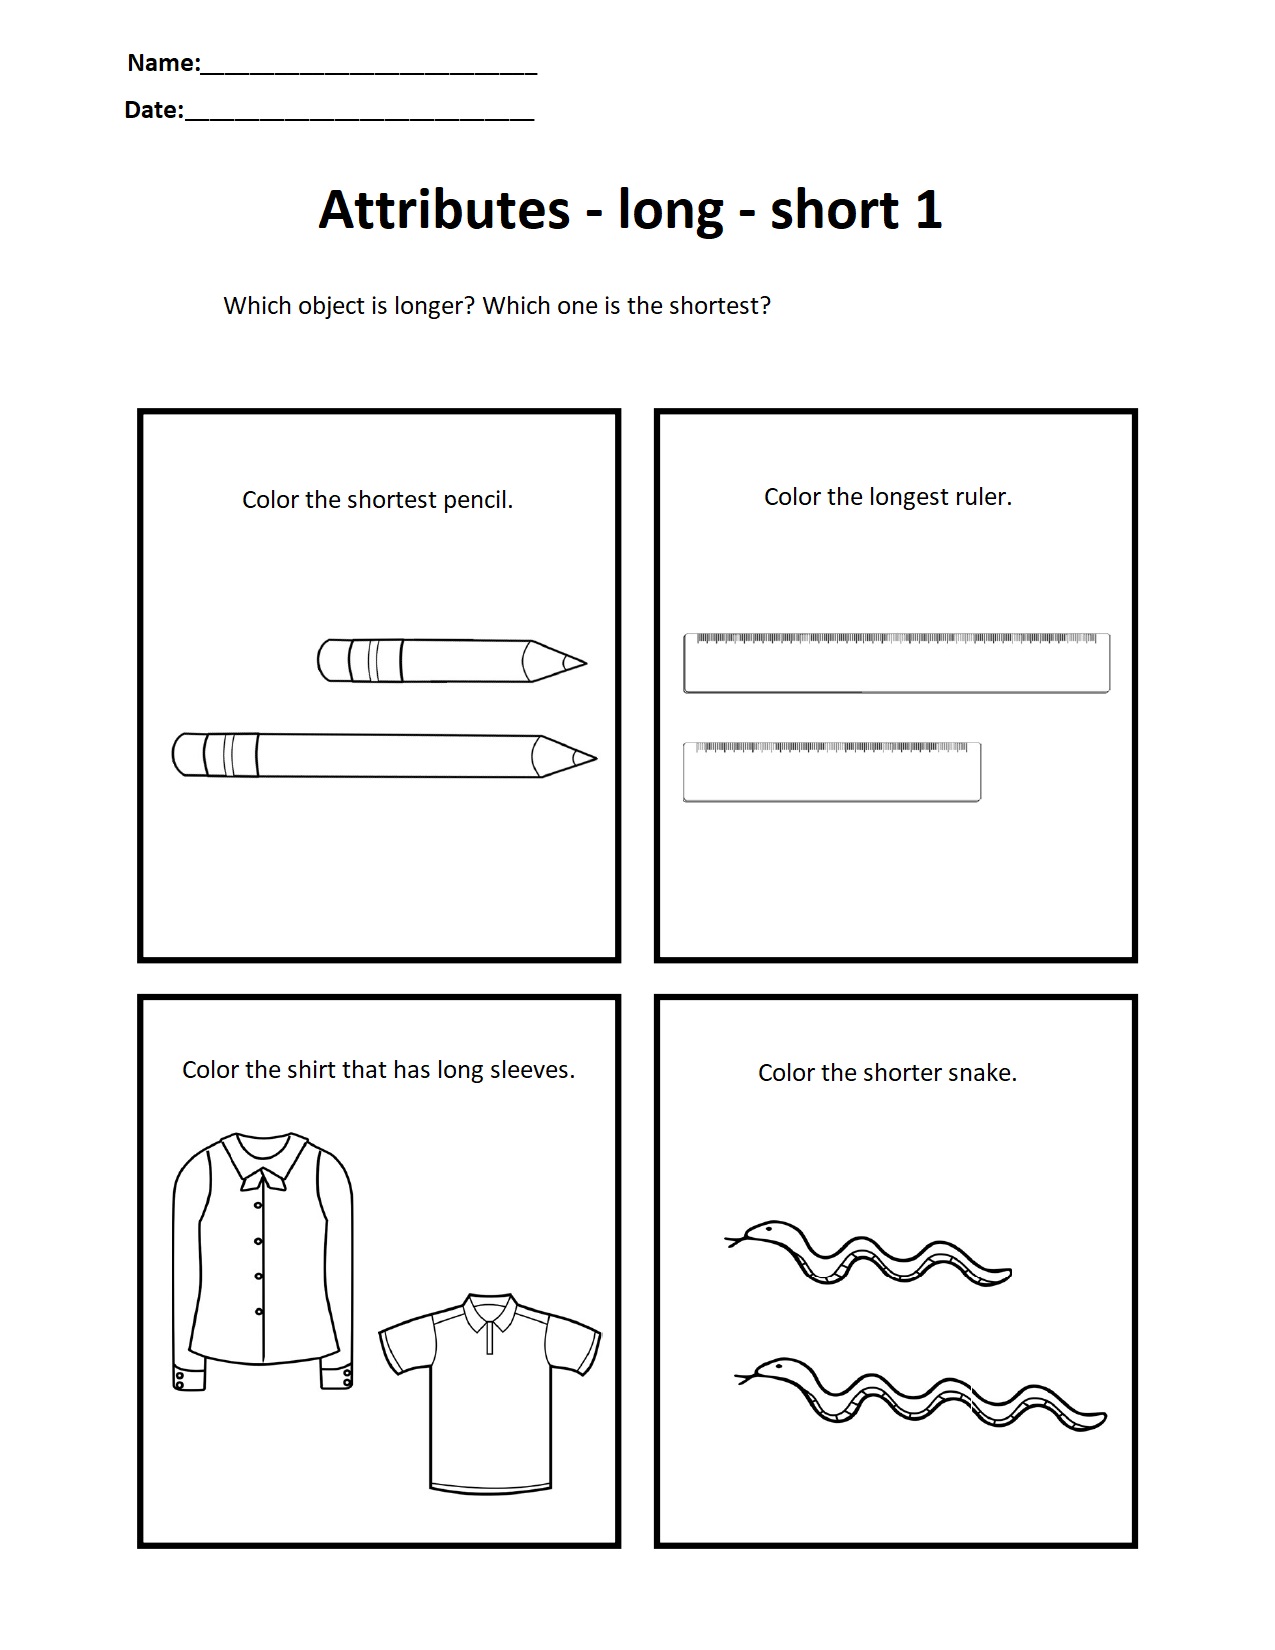 Attributes - long - short 1.jpg